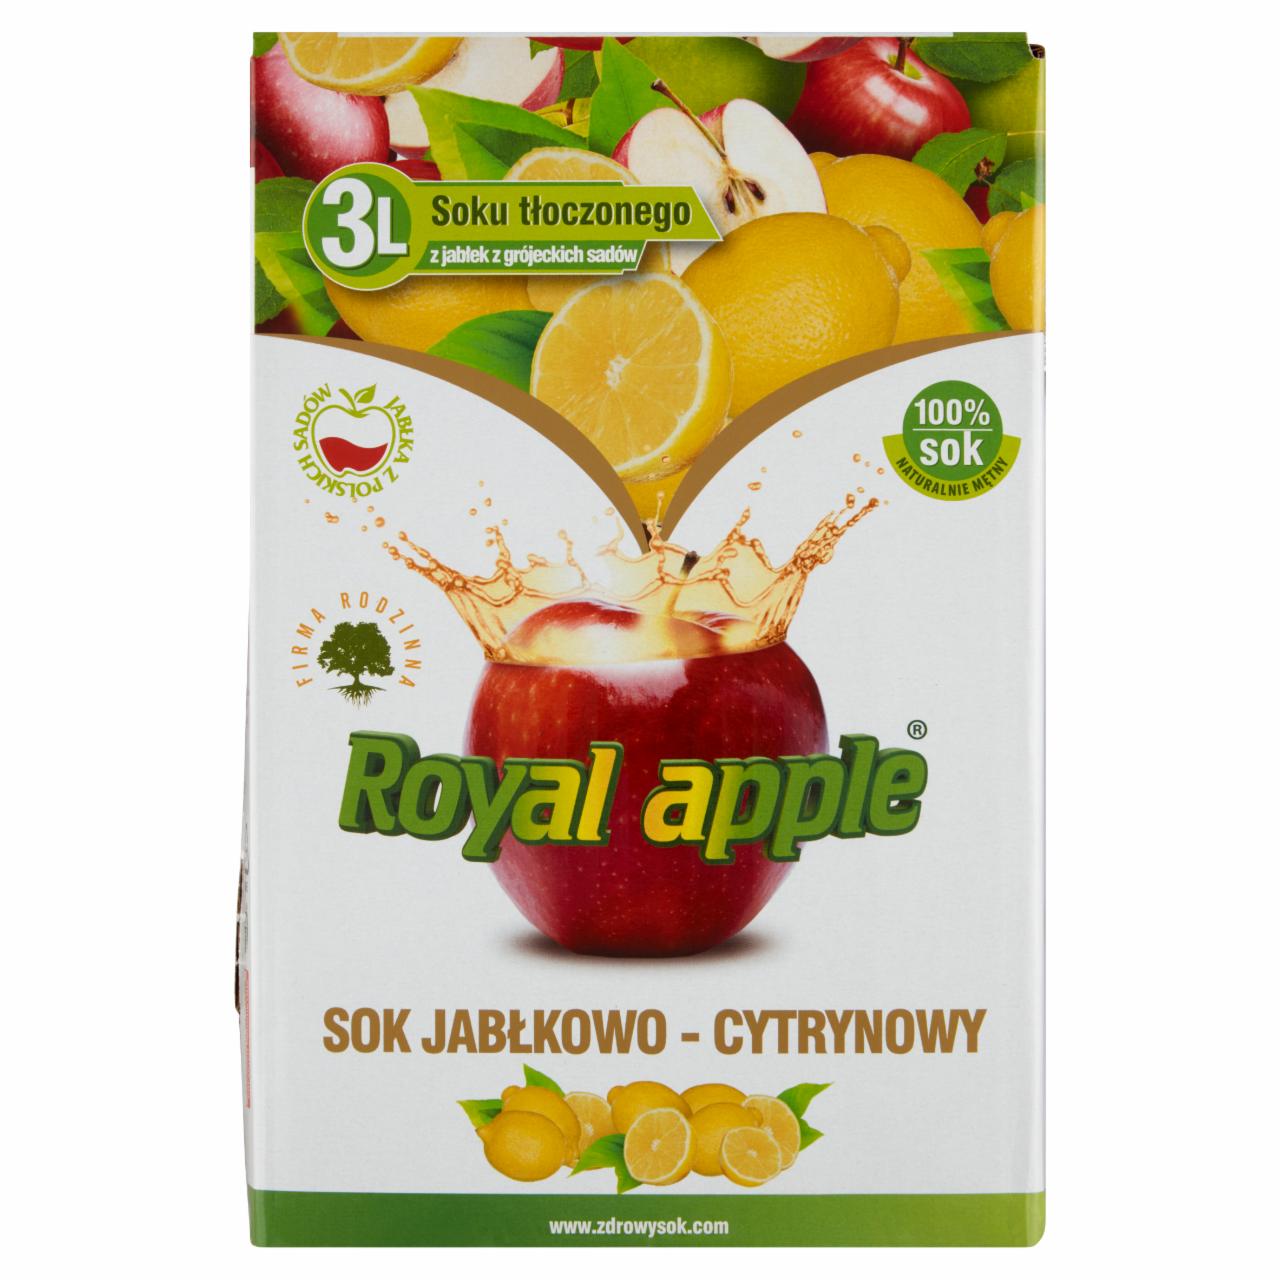 Zdjęcia - Royal apple Sok jabłkowo-cytrynowy 3 l